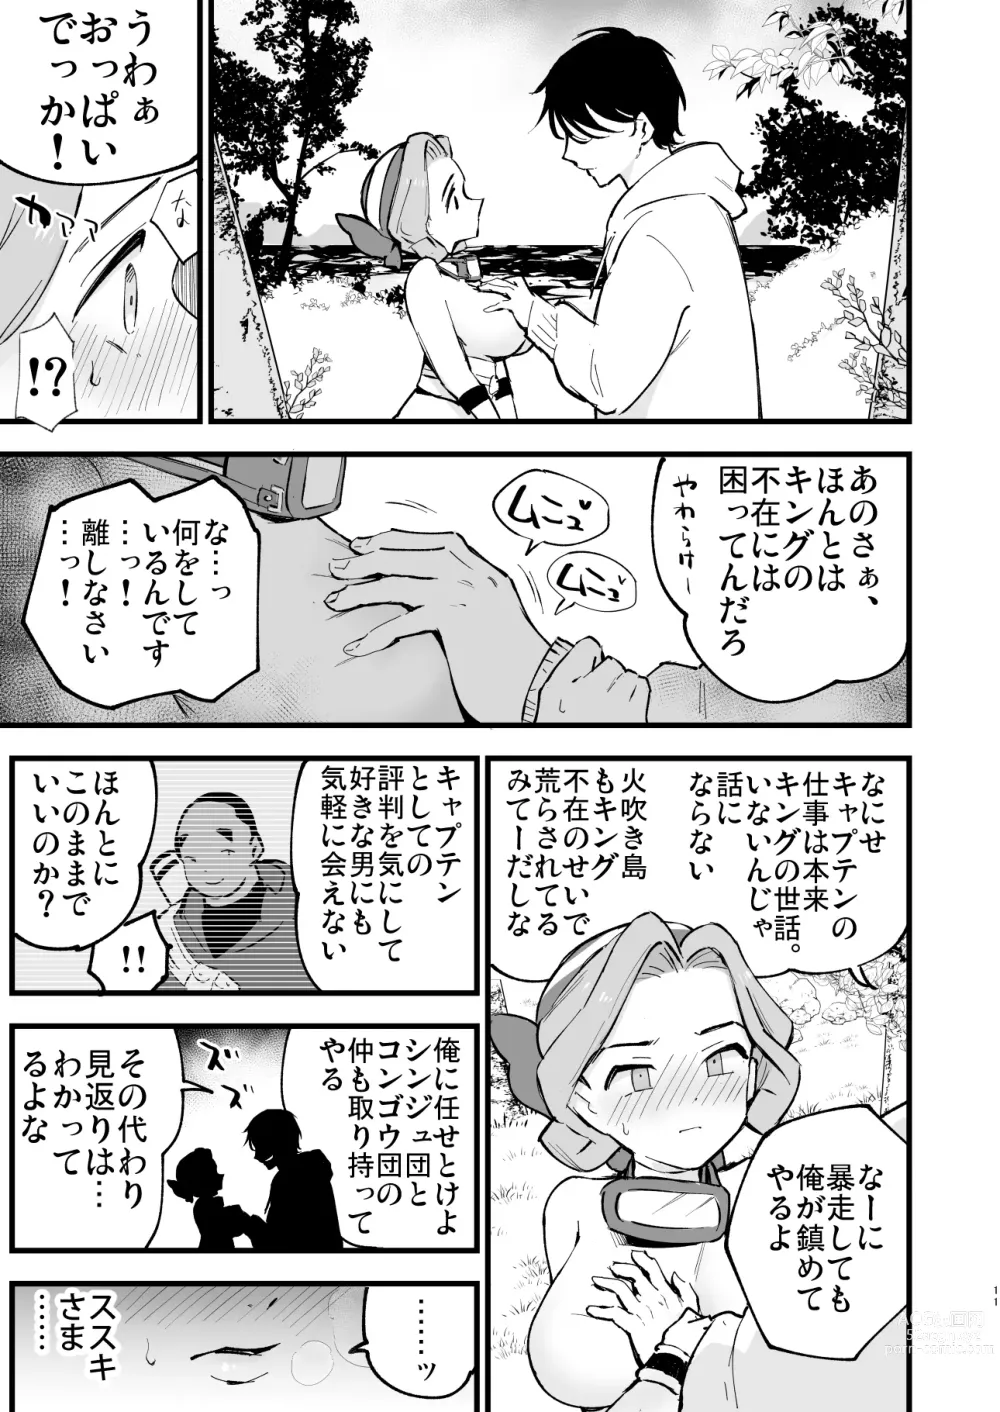 Page 11 of doujinshi Hisui Tensei-roku 3